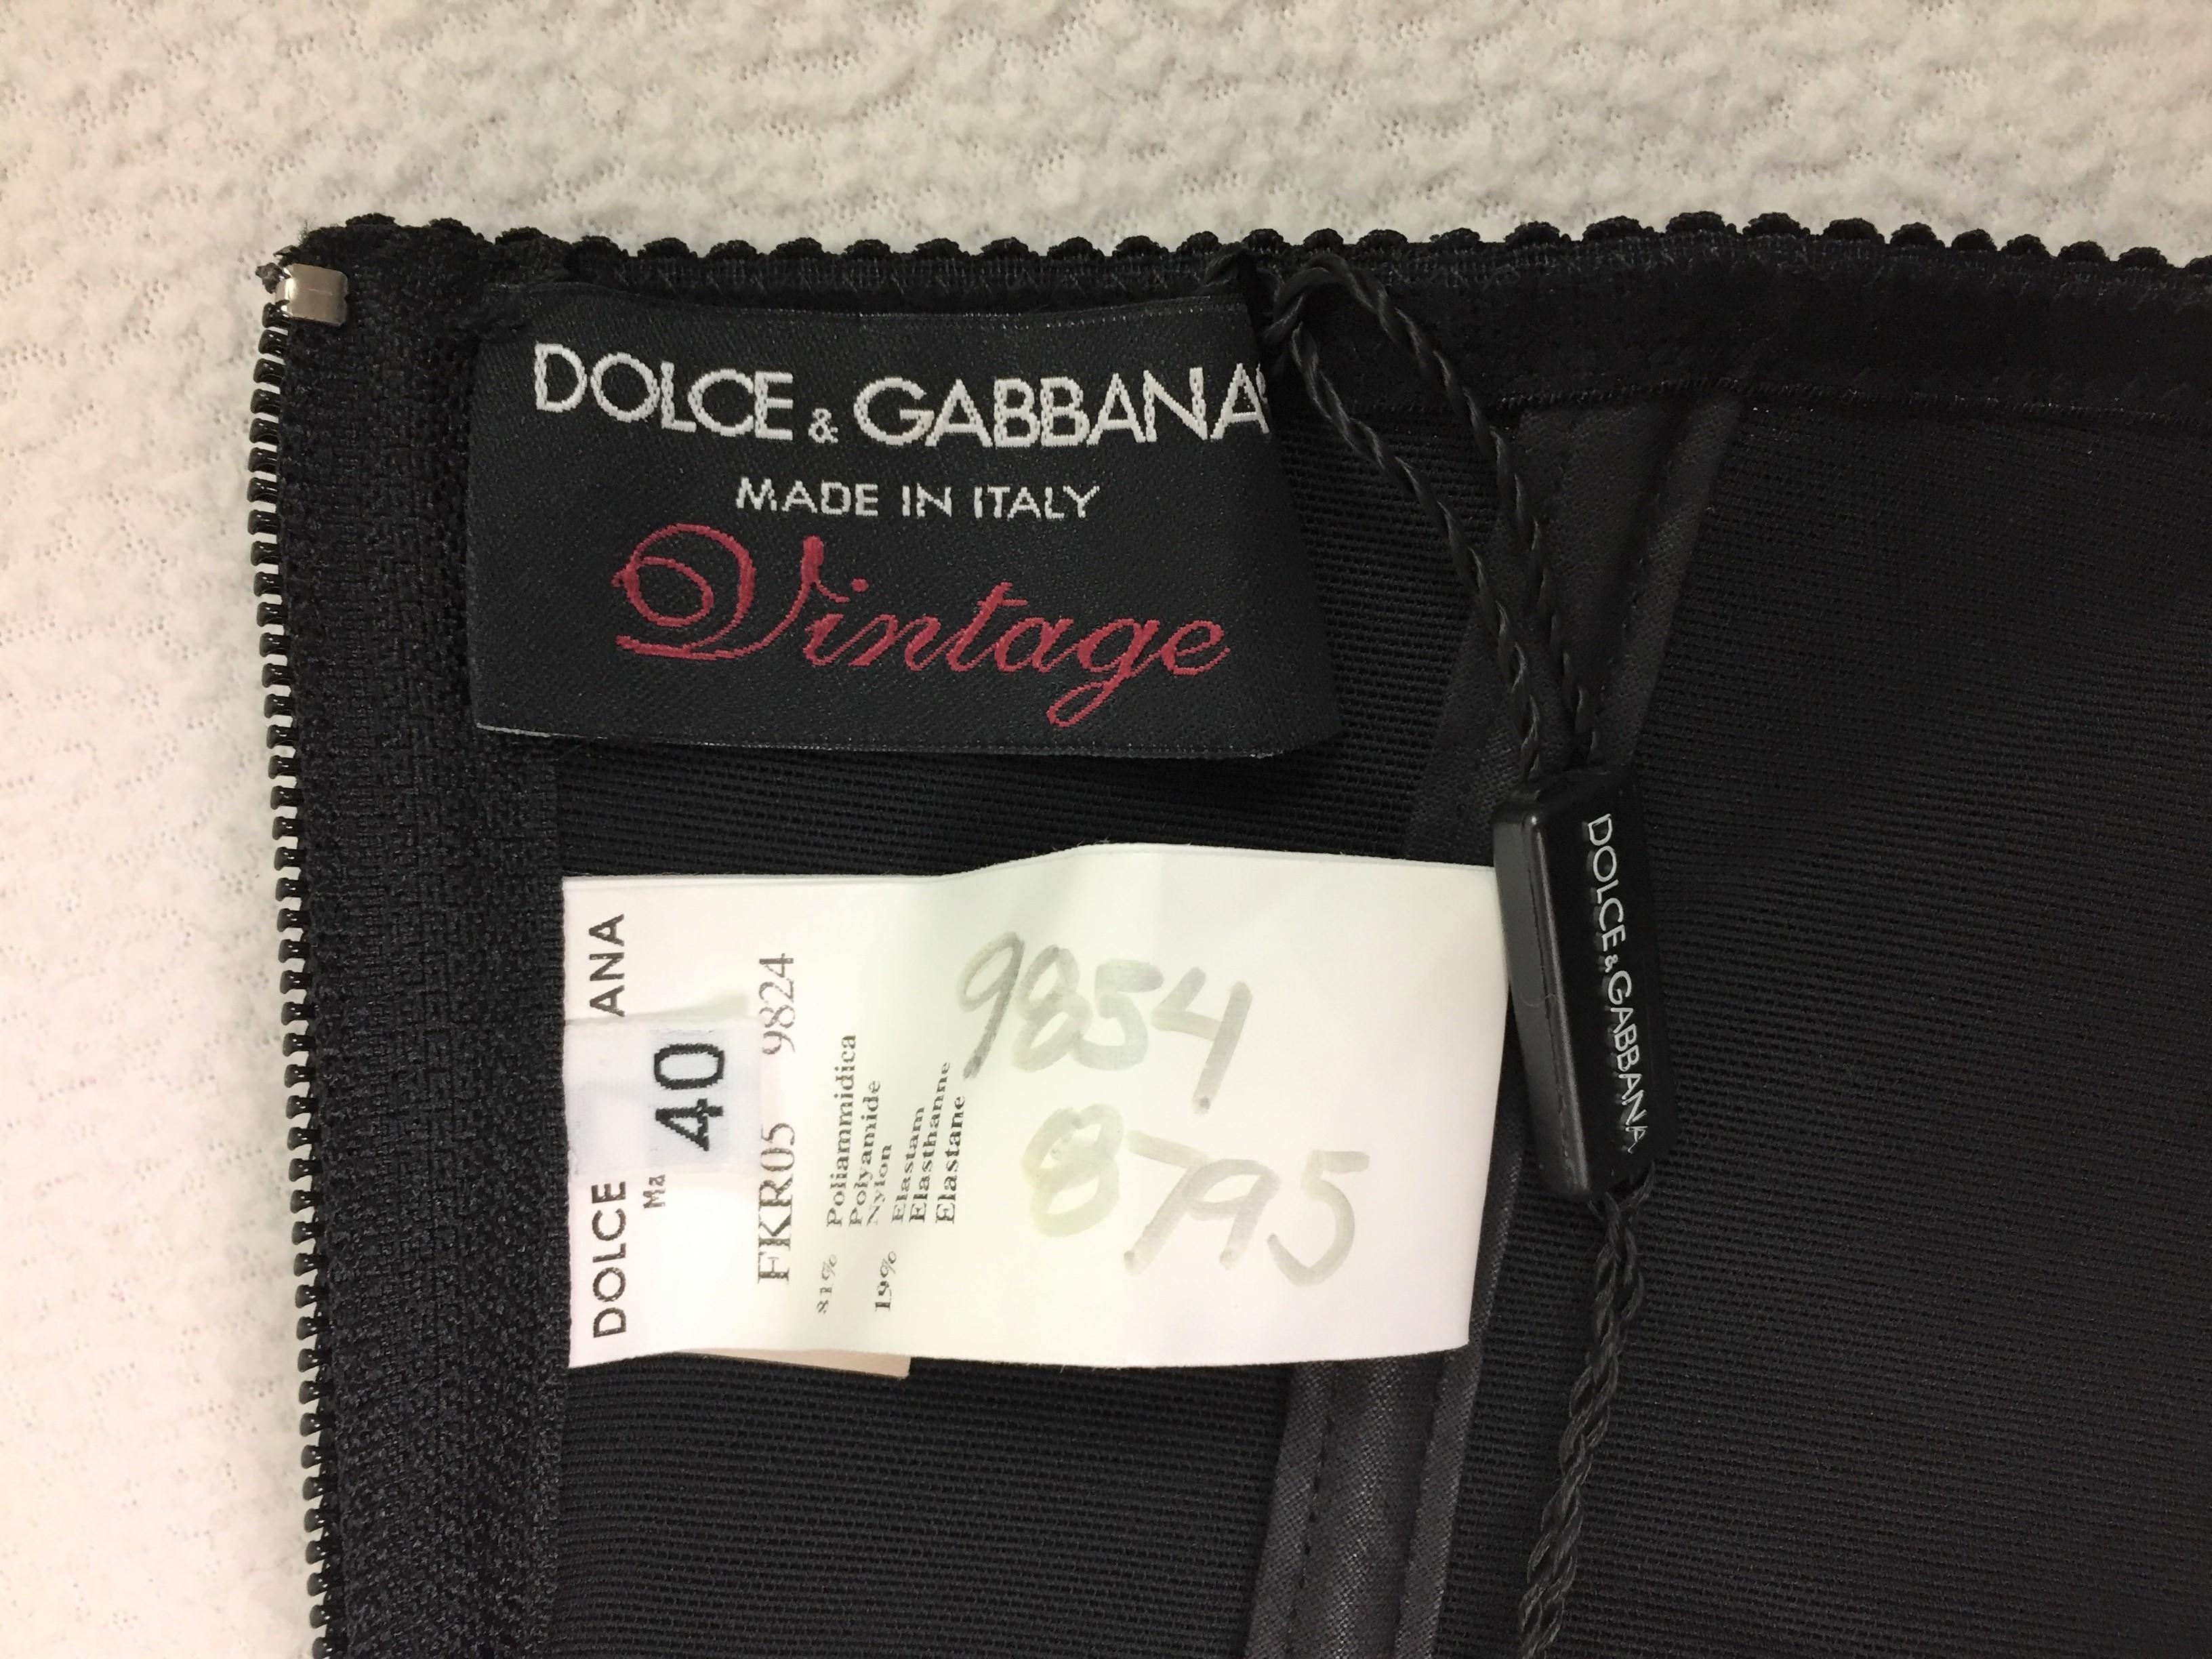 S/S 2003 Dolce & Gabbana 